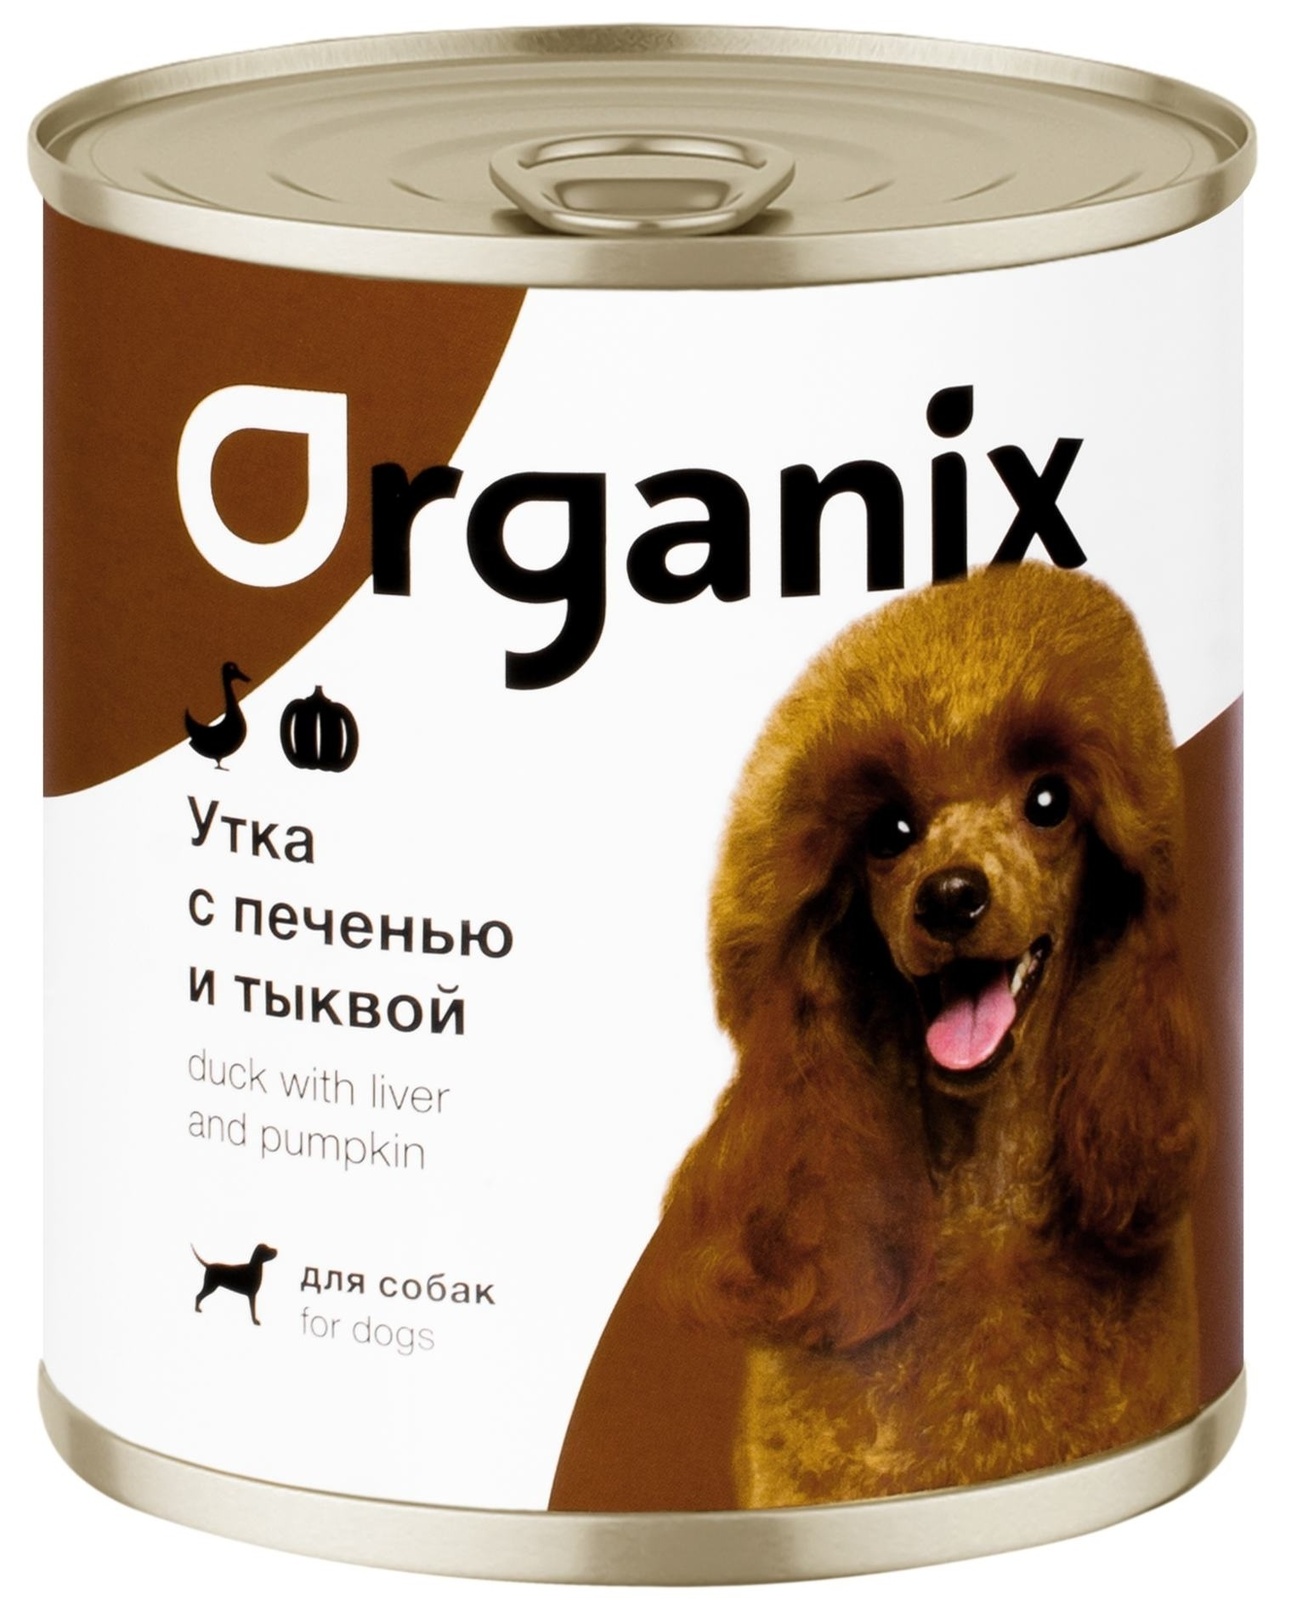 цена Organix консервы Organix консервы для собак Сочная утка с печенью и тыквой (100 г)